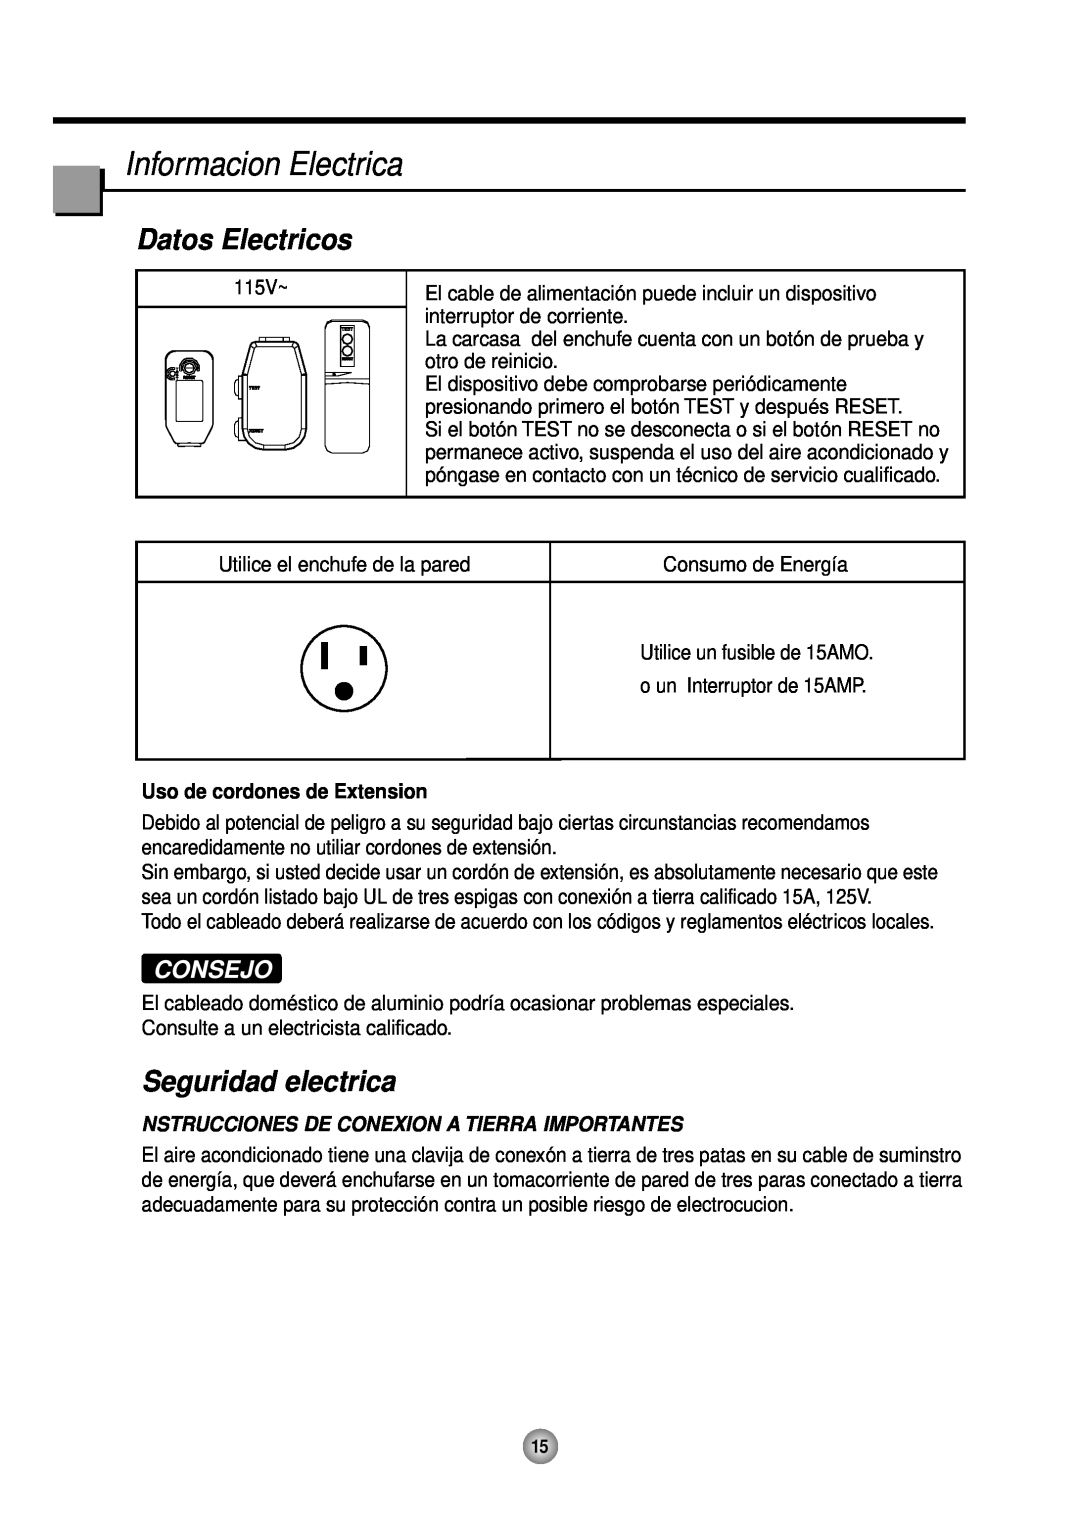 Friedrich CP10, CP12 Informacion Electrica, Datos Electricos, Seguridad electrica, Consejo, Uso de cordones de Extension 